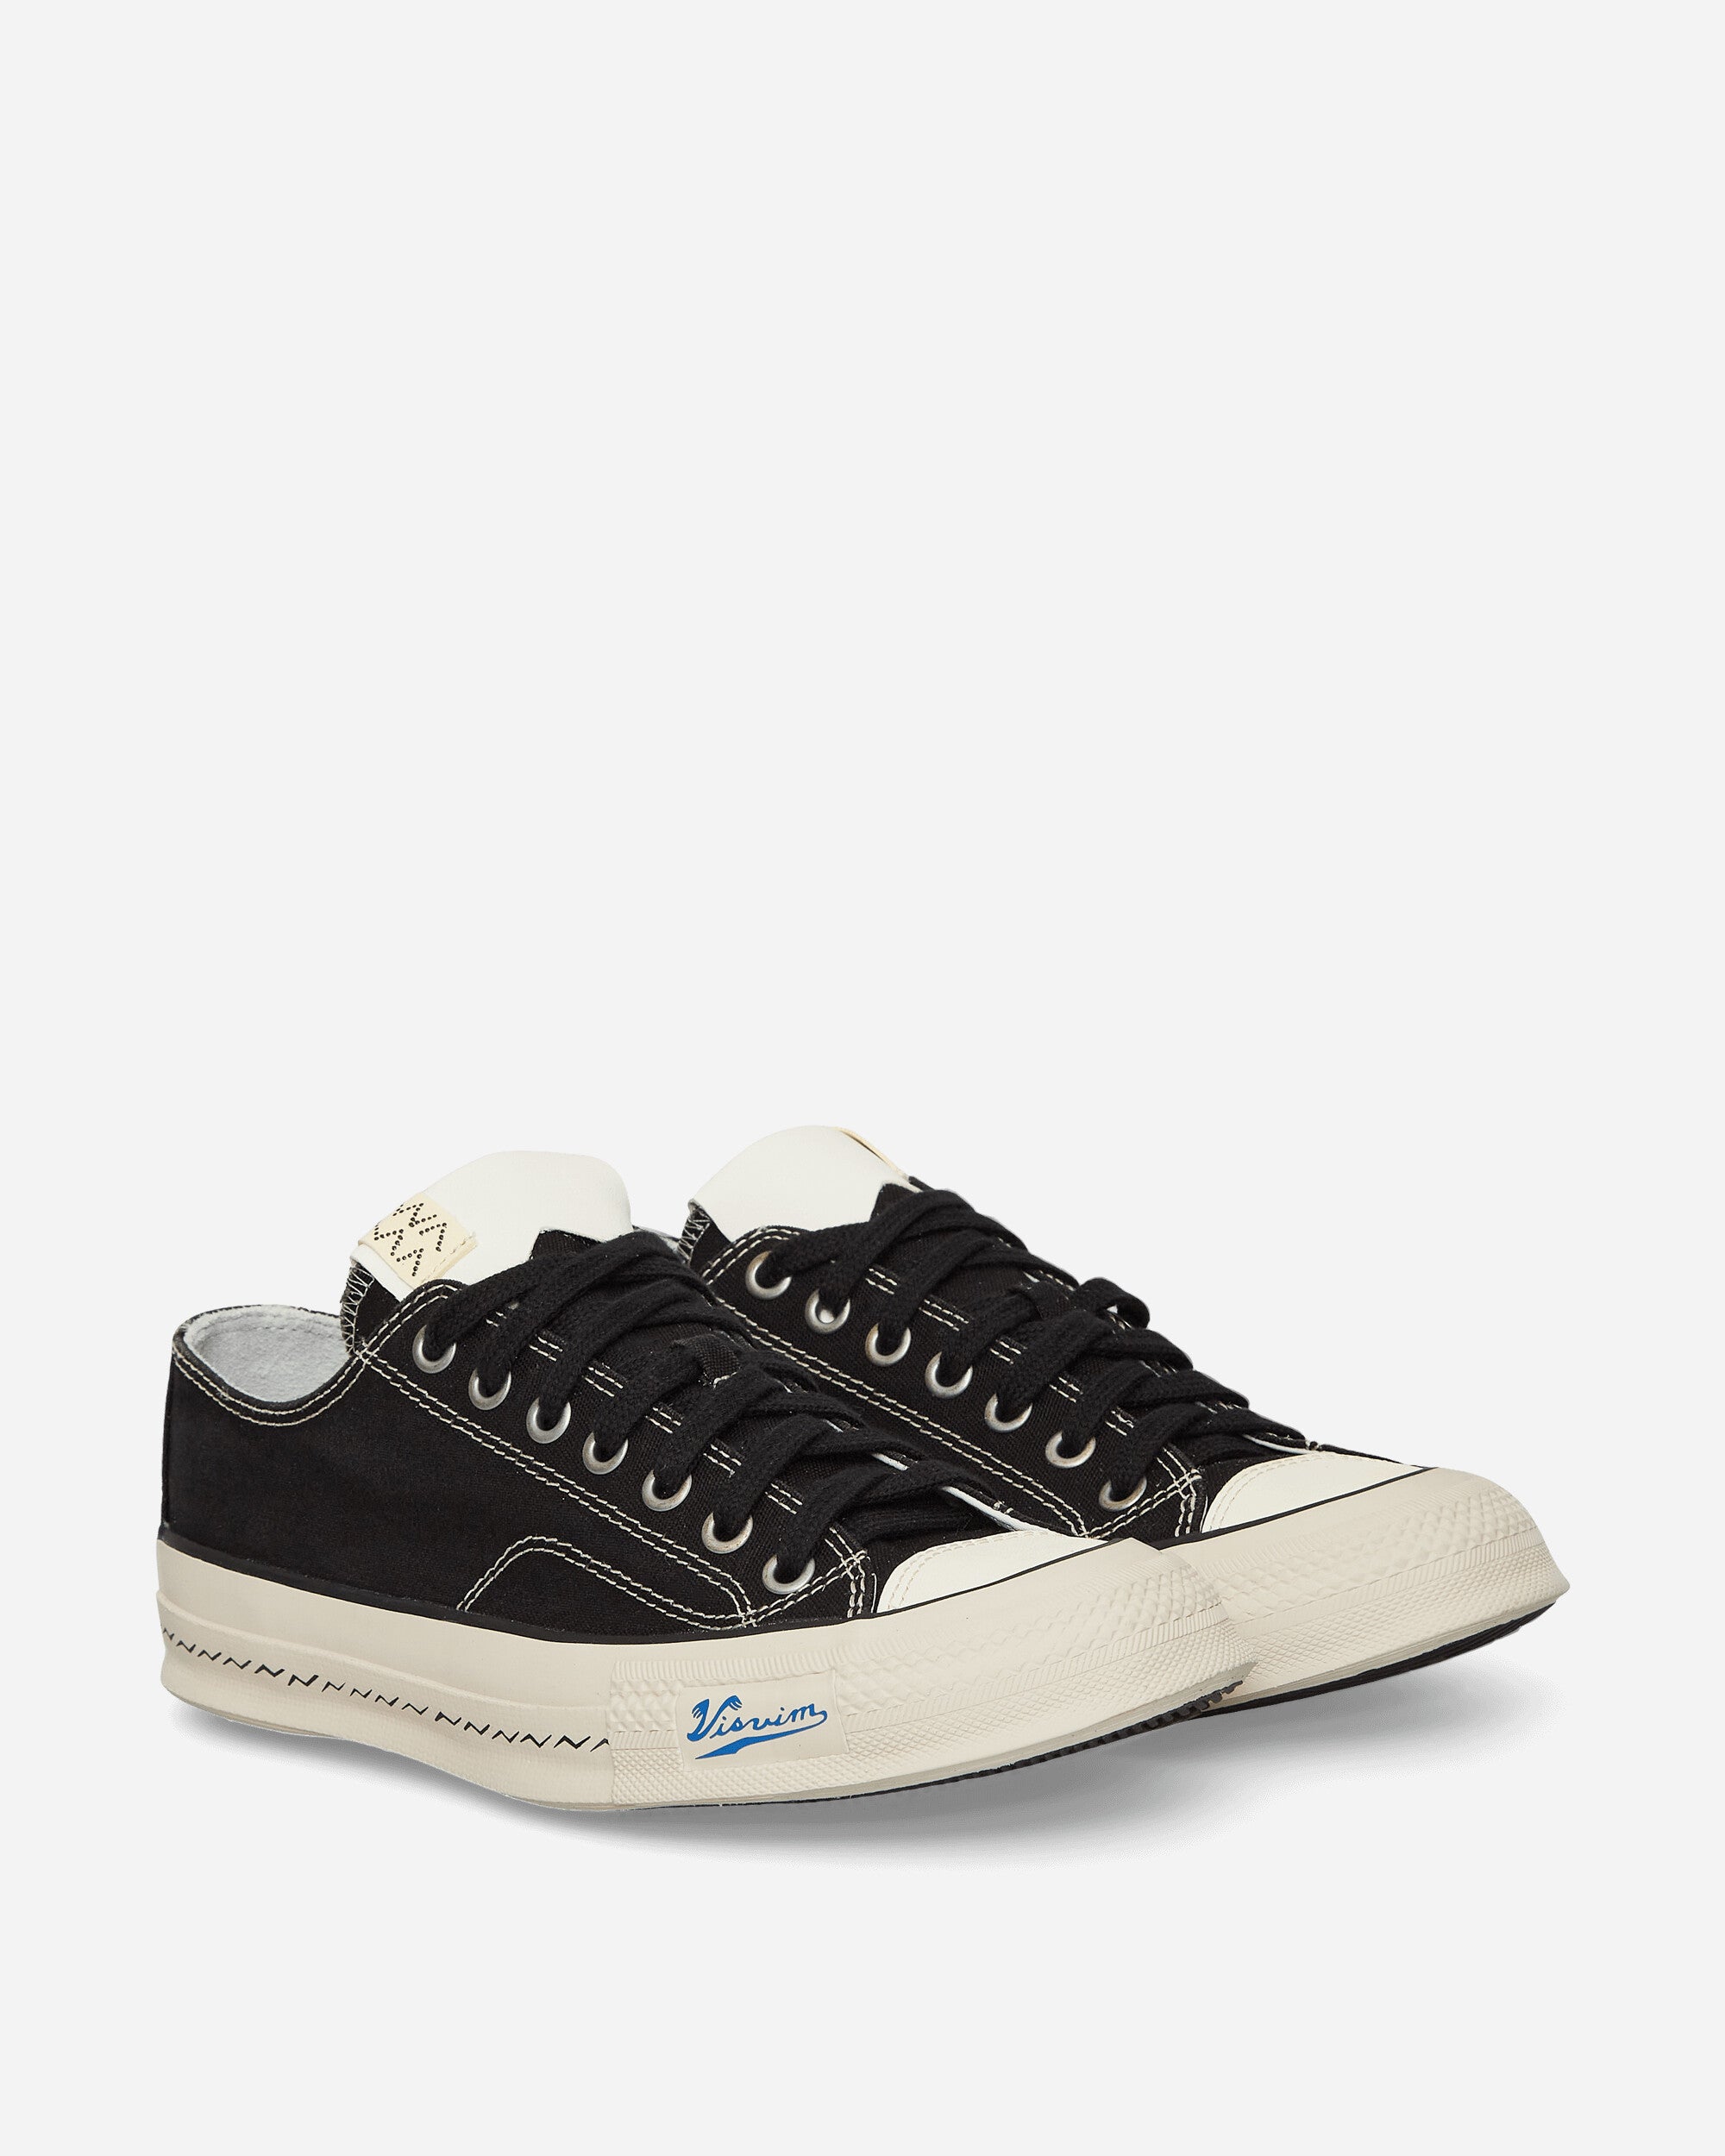 visvim Skagway Lo Black Sneakers Low 124101001003 001